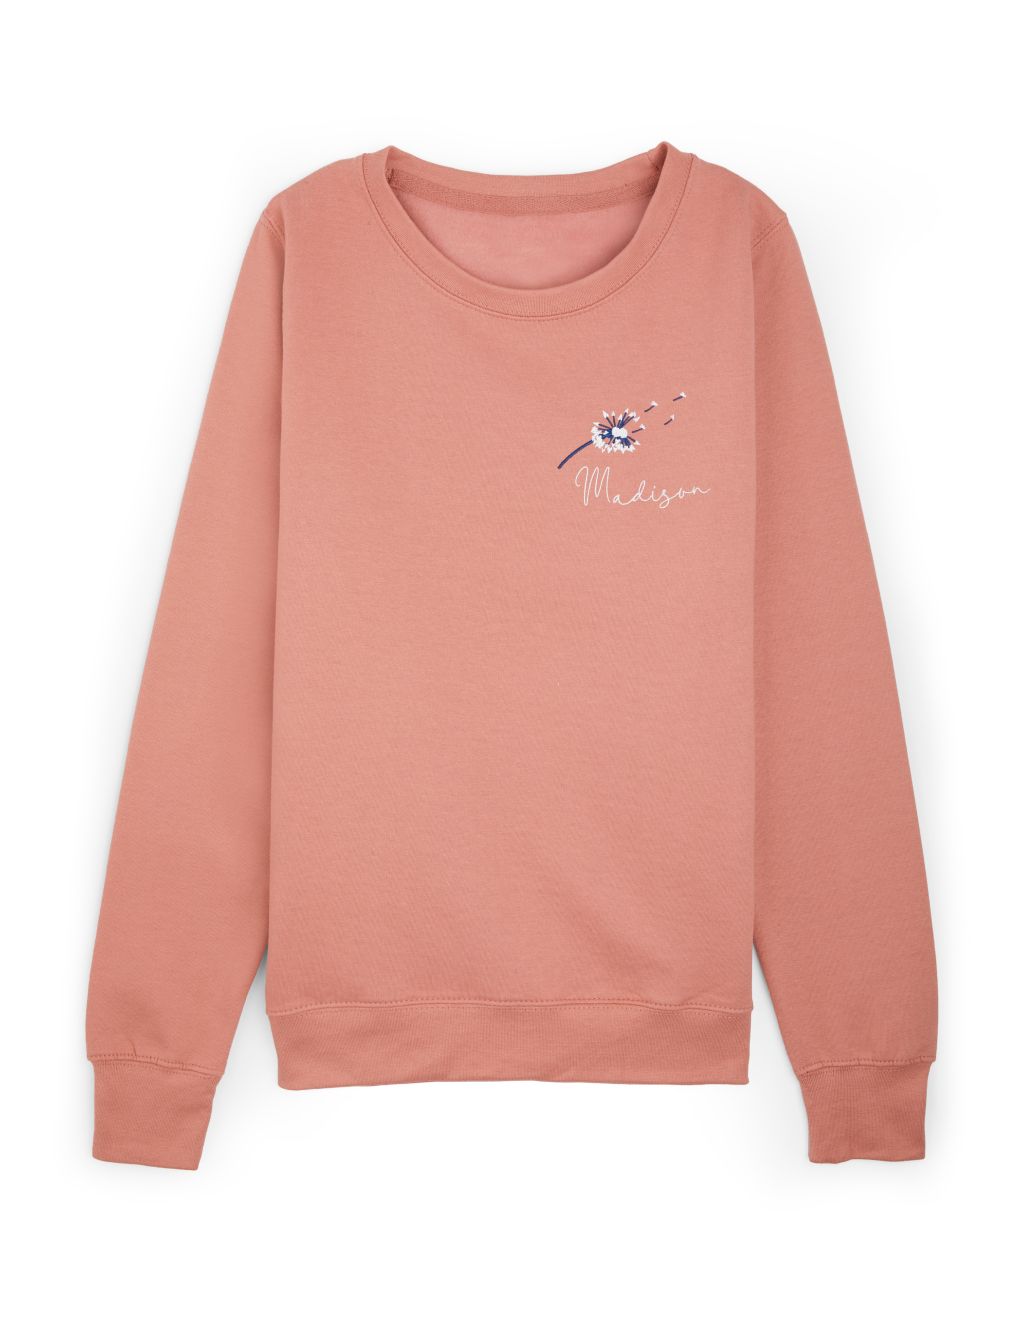 Personalised Ladies Dandelion Sweatshirt